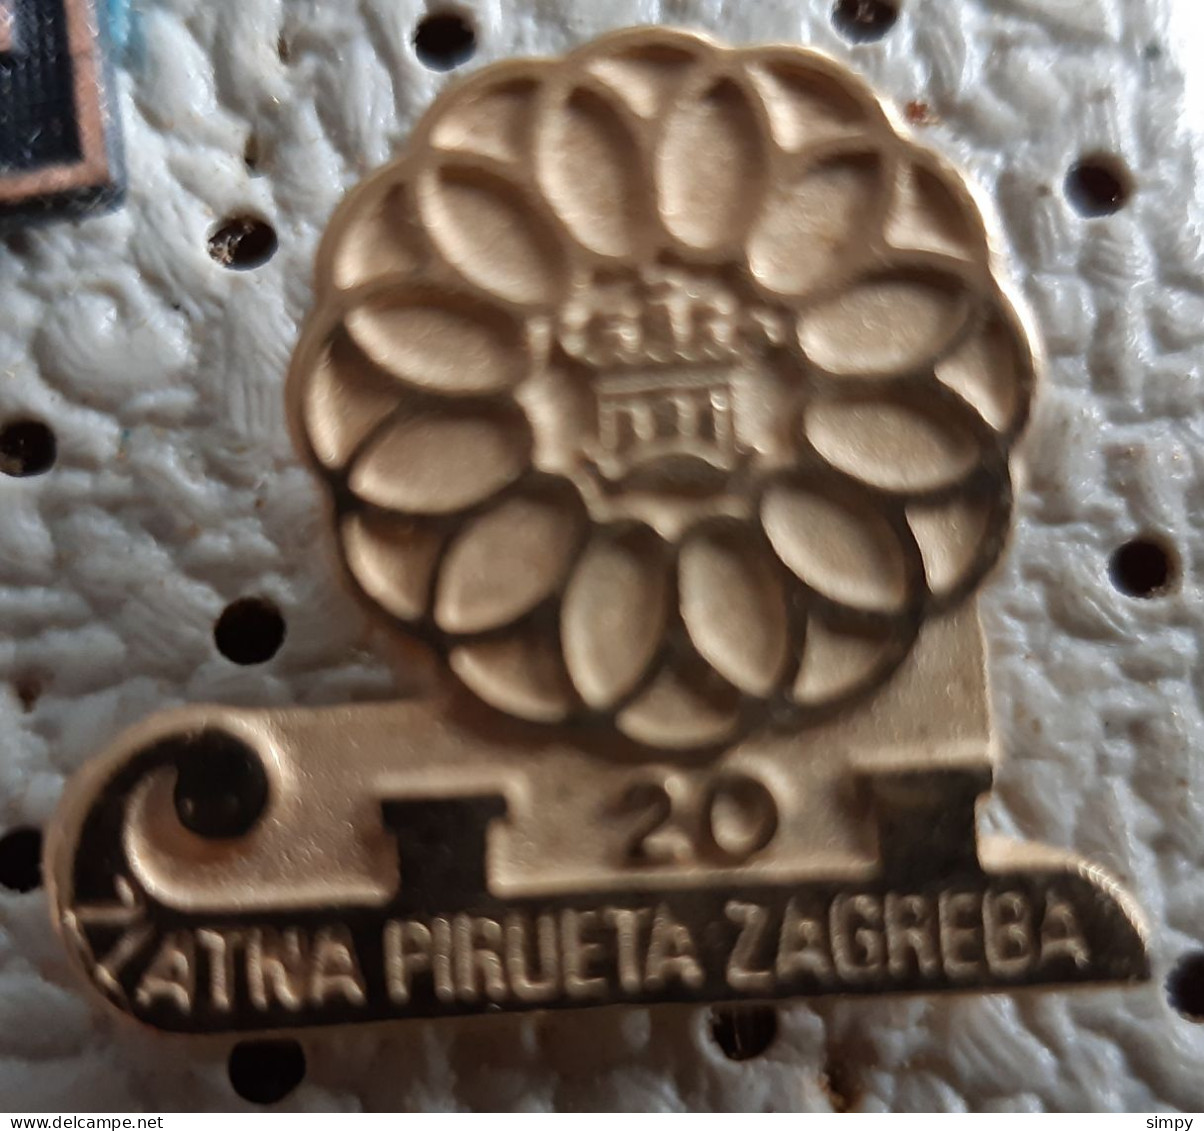 Zlatna Pirueta Zagreb 20 Years  Figure Skating Skate  YUgoslavia Vintage Pin Badge - Eiskunstlauf